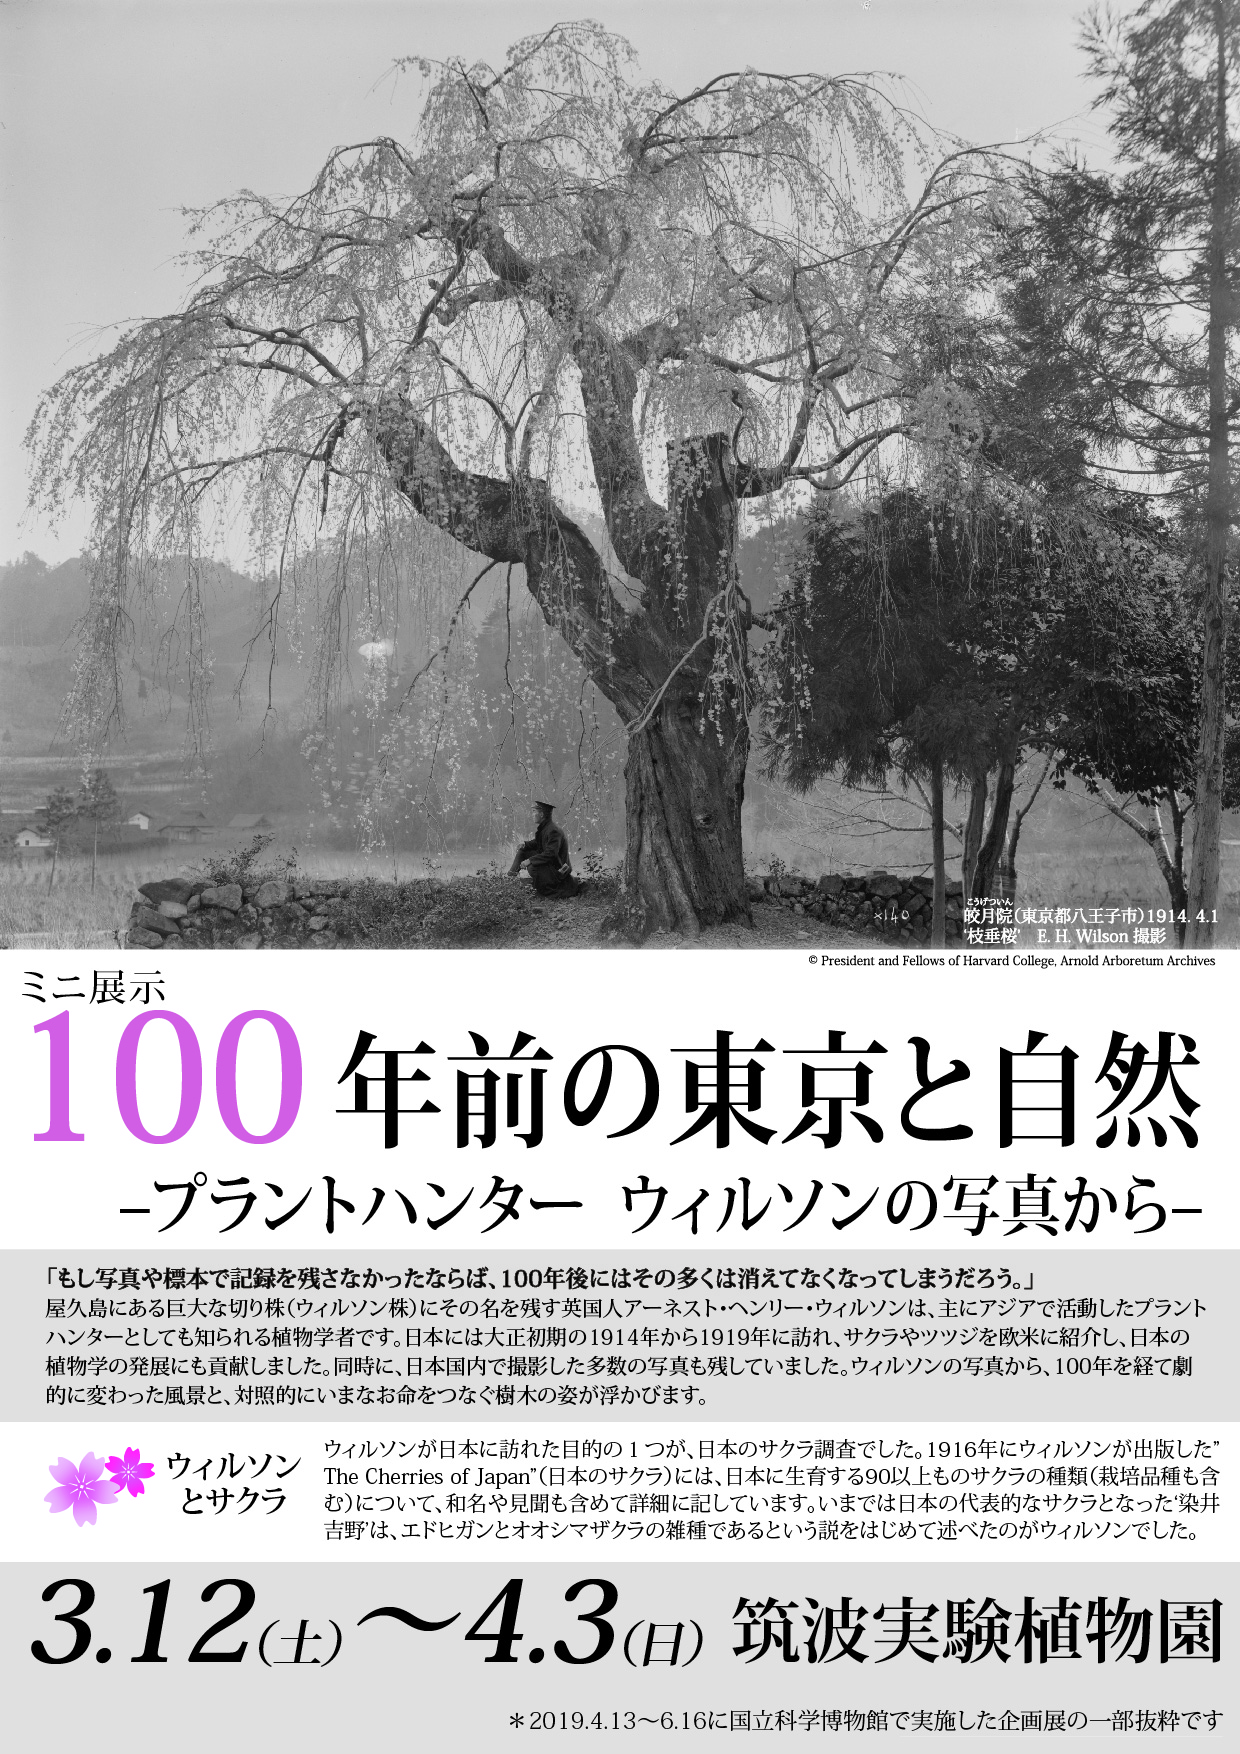 ミニ展示「100 年前の東京と自然」-プラントハンターウィルソンの写真から- - 屋久島の風